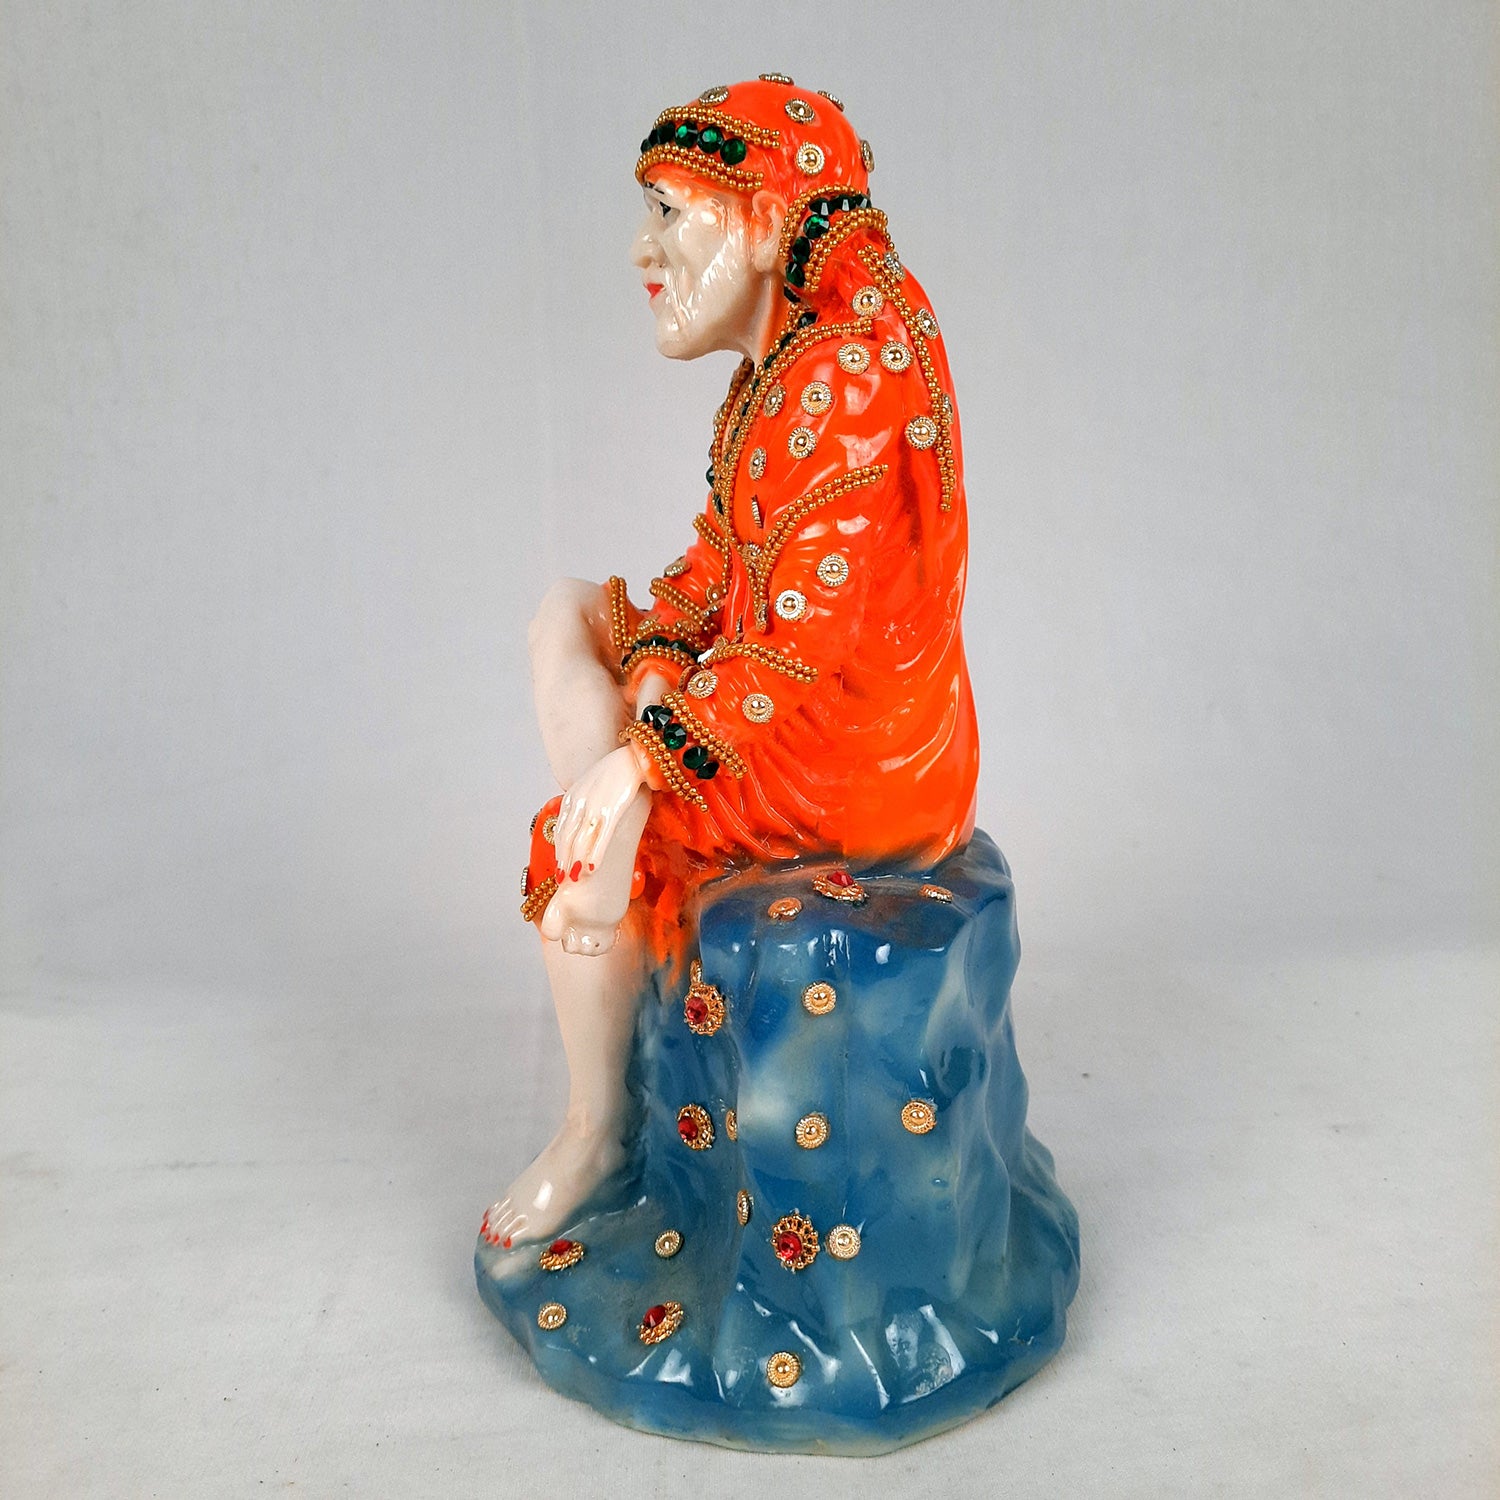 Sai Baba Murti | Shirdi Sai Baba Statue - For Home, Table Decor, Office & Gifts - 9 Inch - apkamart